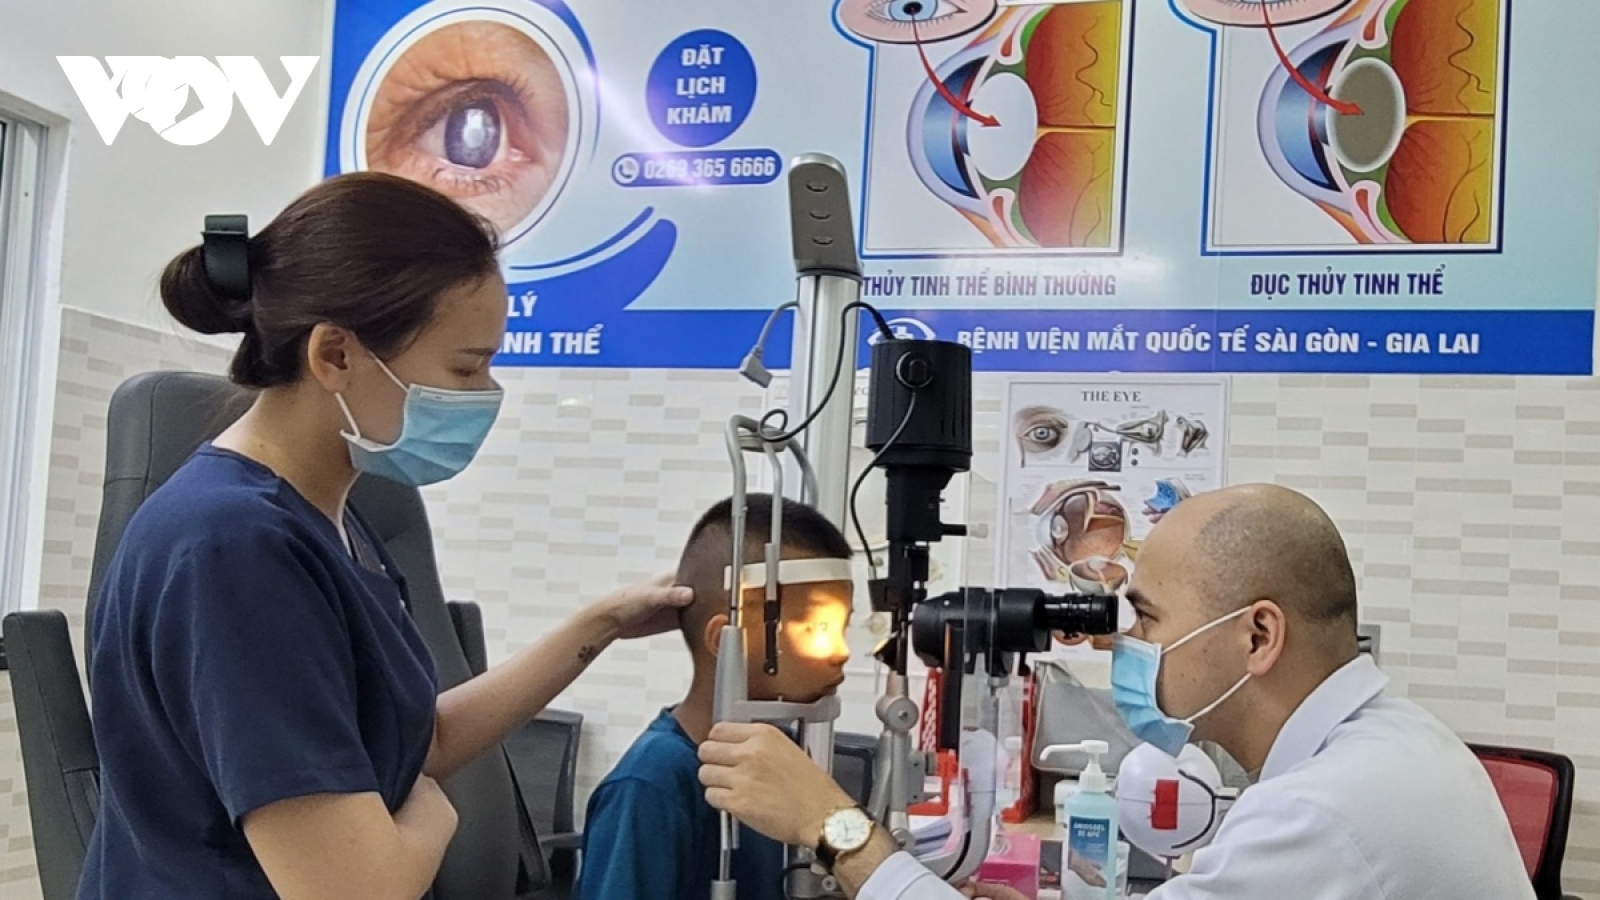 Hà Nội ghi nhận nhiều học sinh tới bệnh viện khám đau mắt đỏ